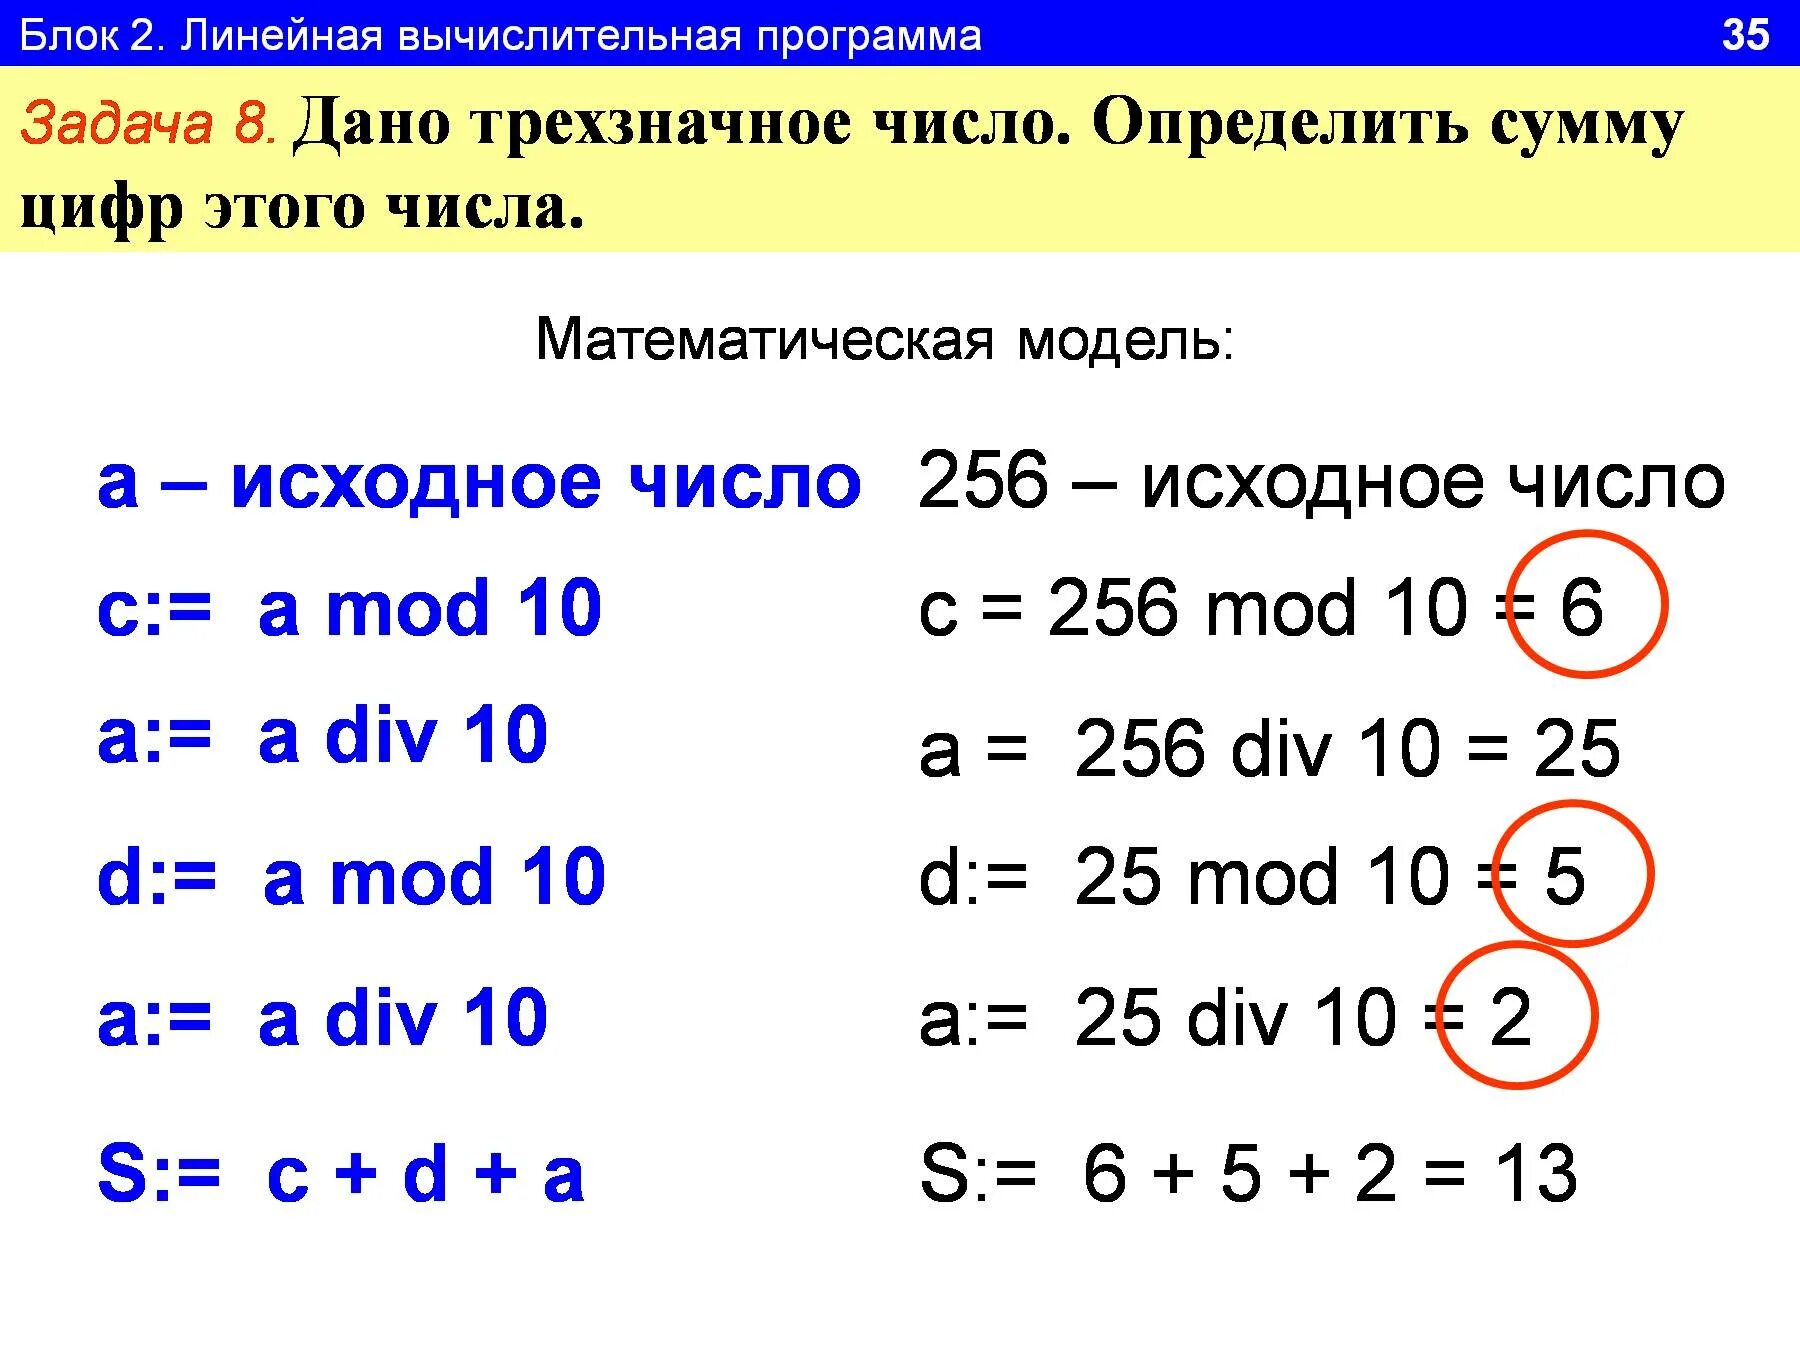 Произведение цифр трехзначного числа равно 315. Программа на Паскале сумма цифр трехзначного числа. Сумма цифр трехзначного числа Pascal. Сумма цифр Информатика. Программа найти сумму цифр трехзначного числа.